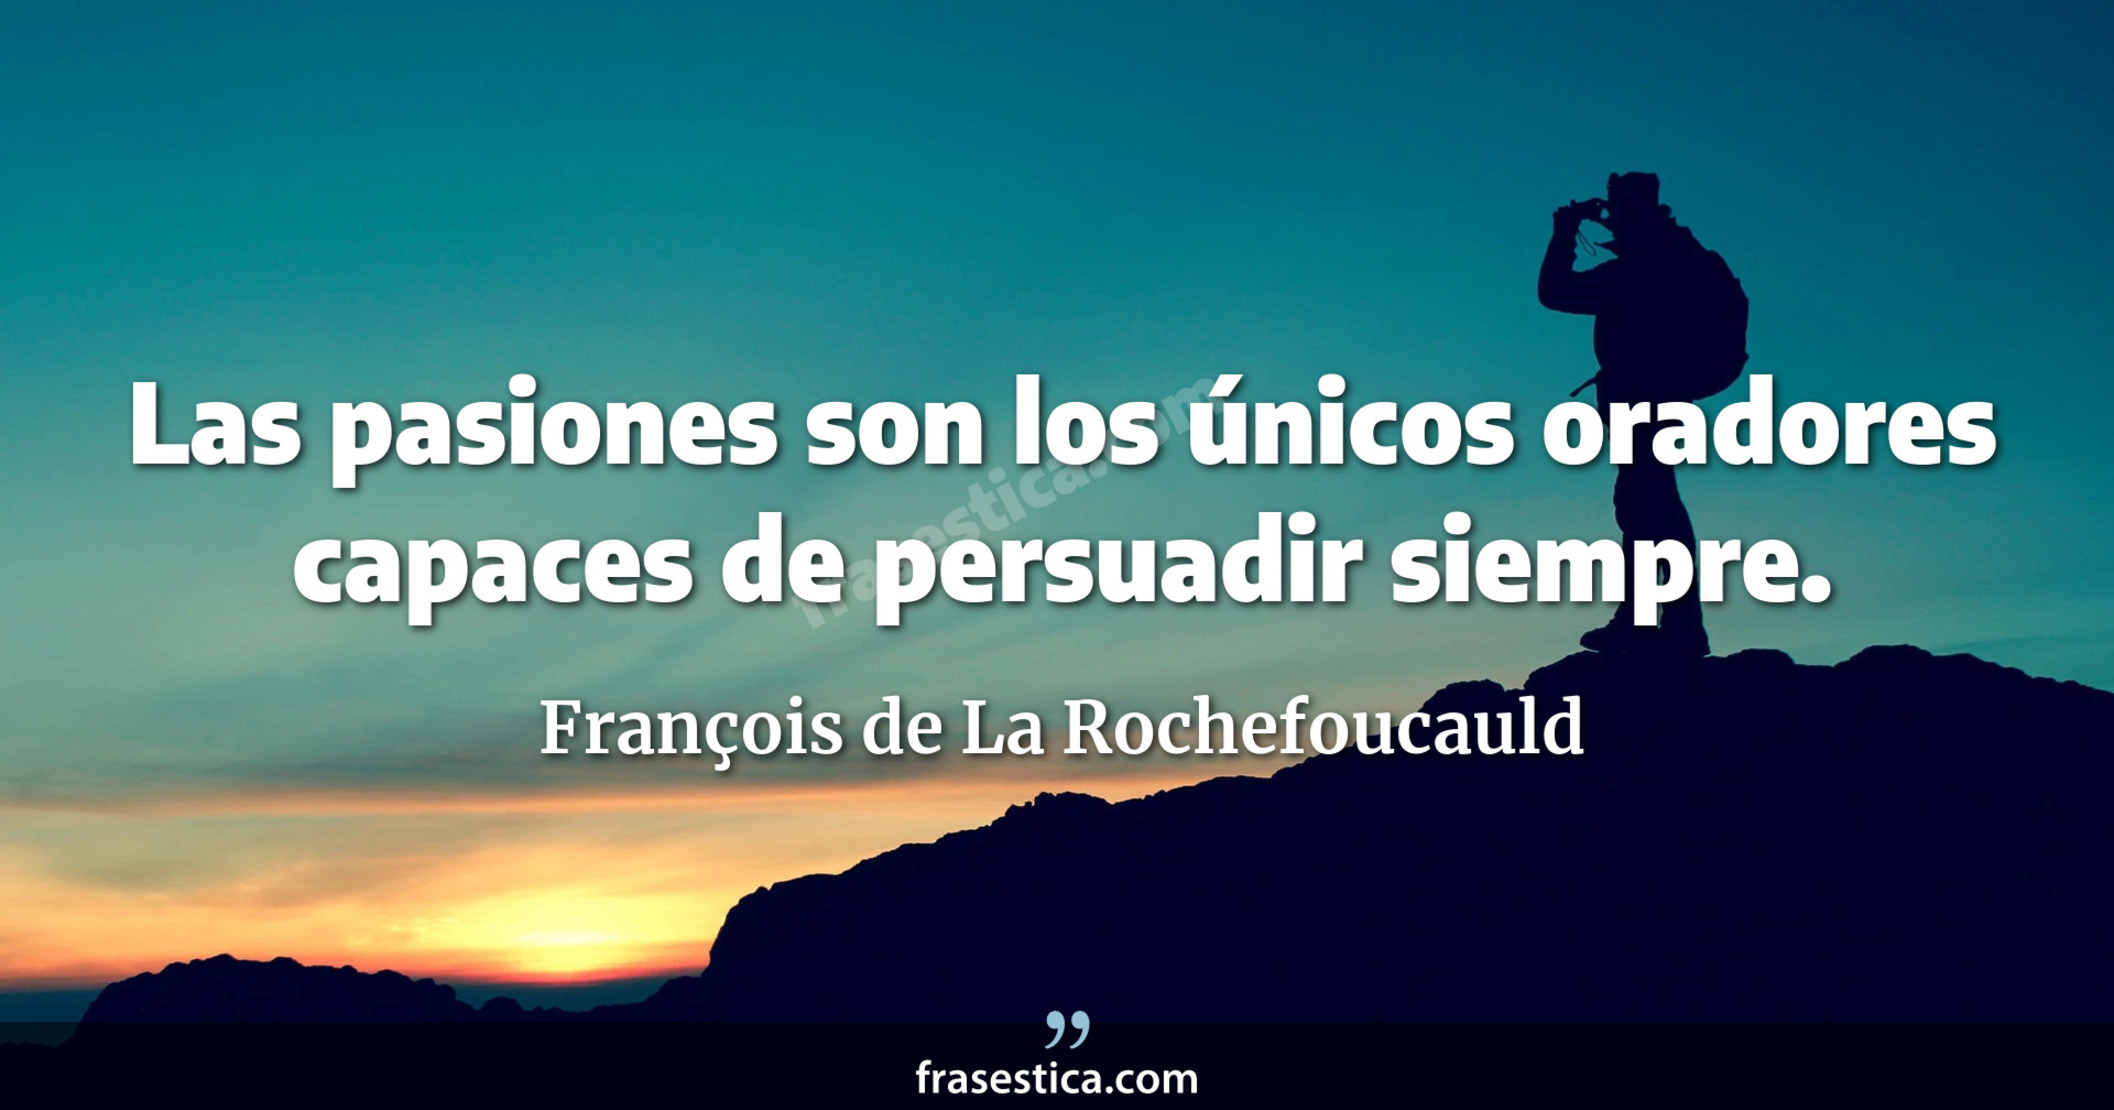 Las pasiones son los únicos oradores capaces de persuadir siempre.  - François de La Rochefoucauld